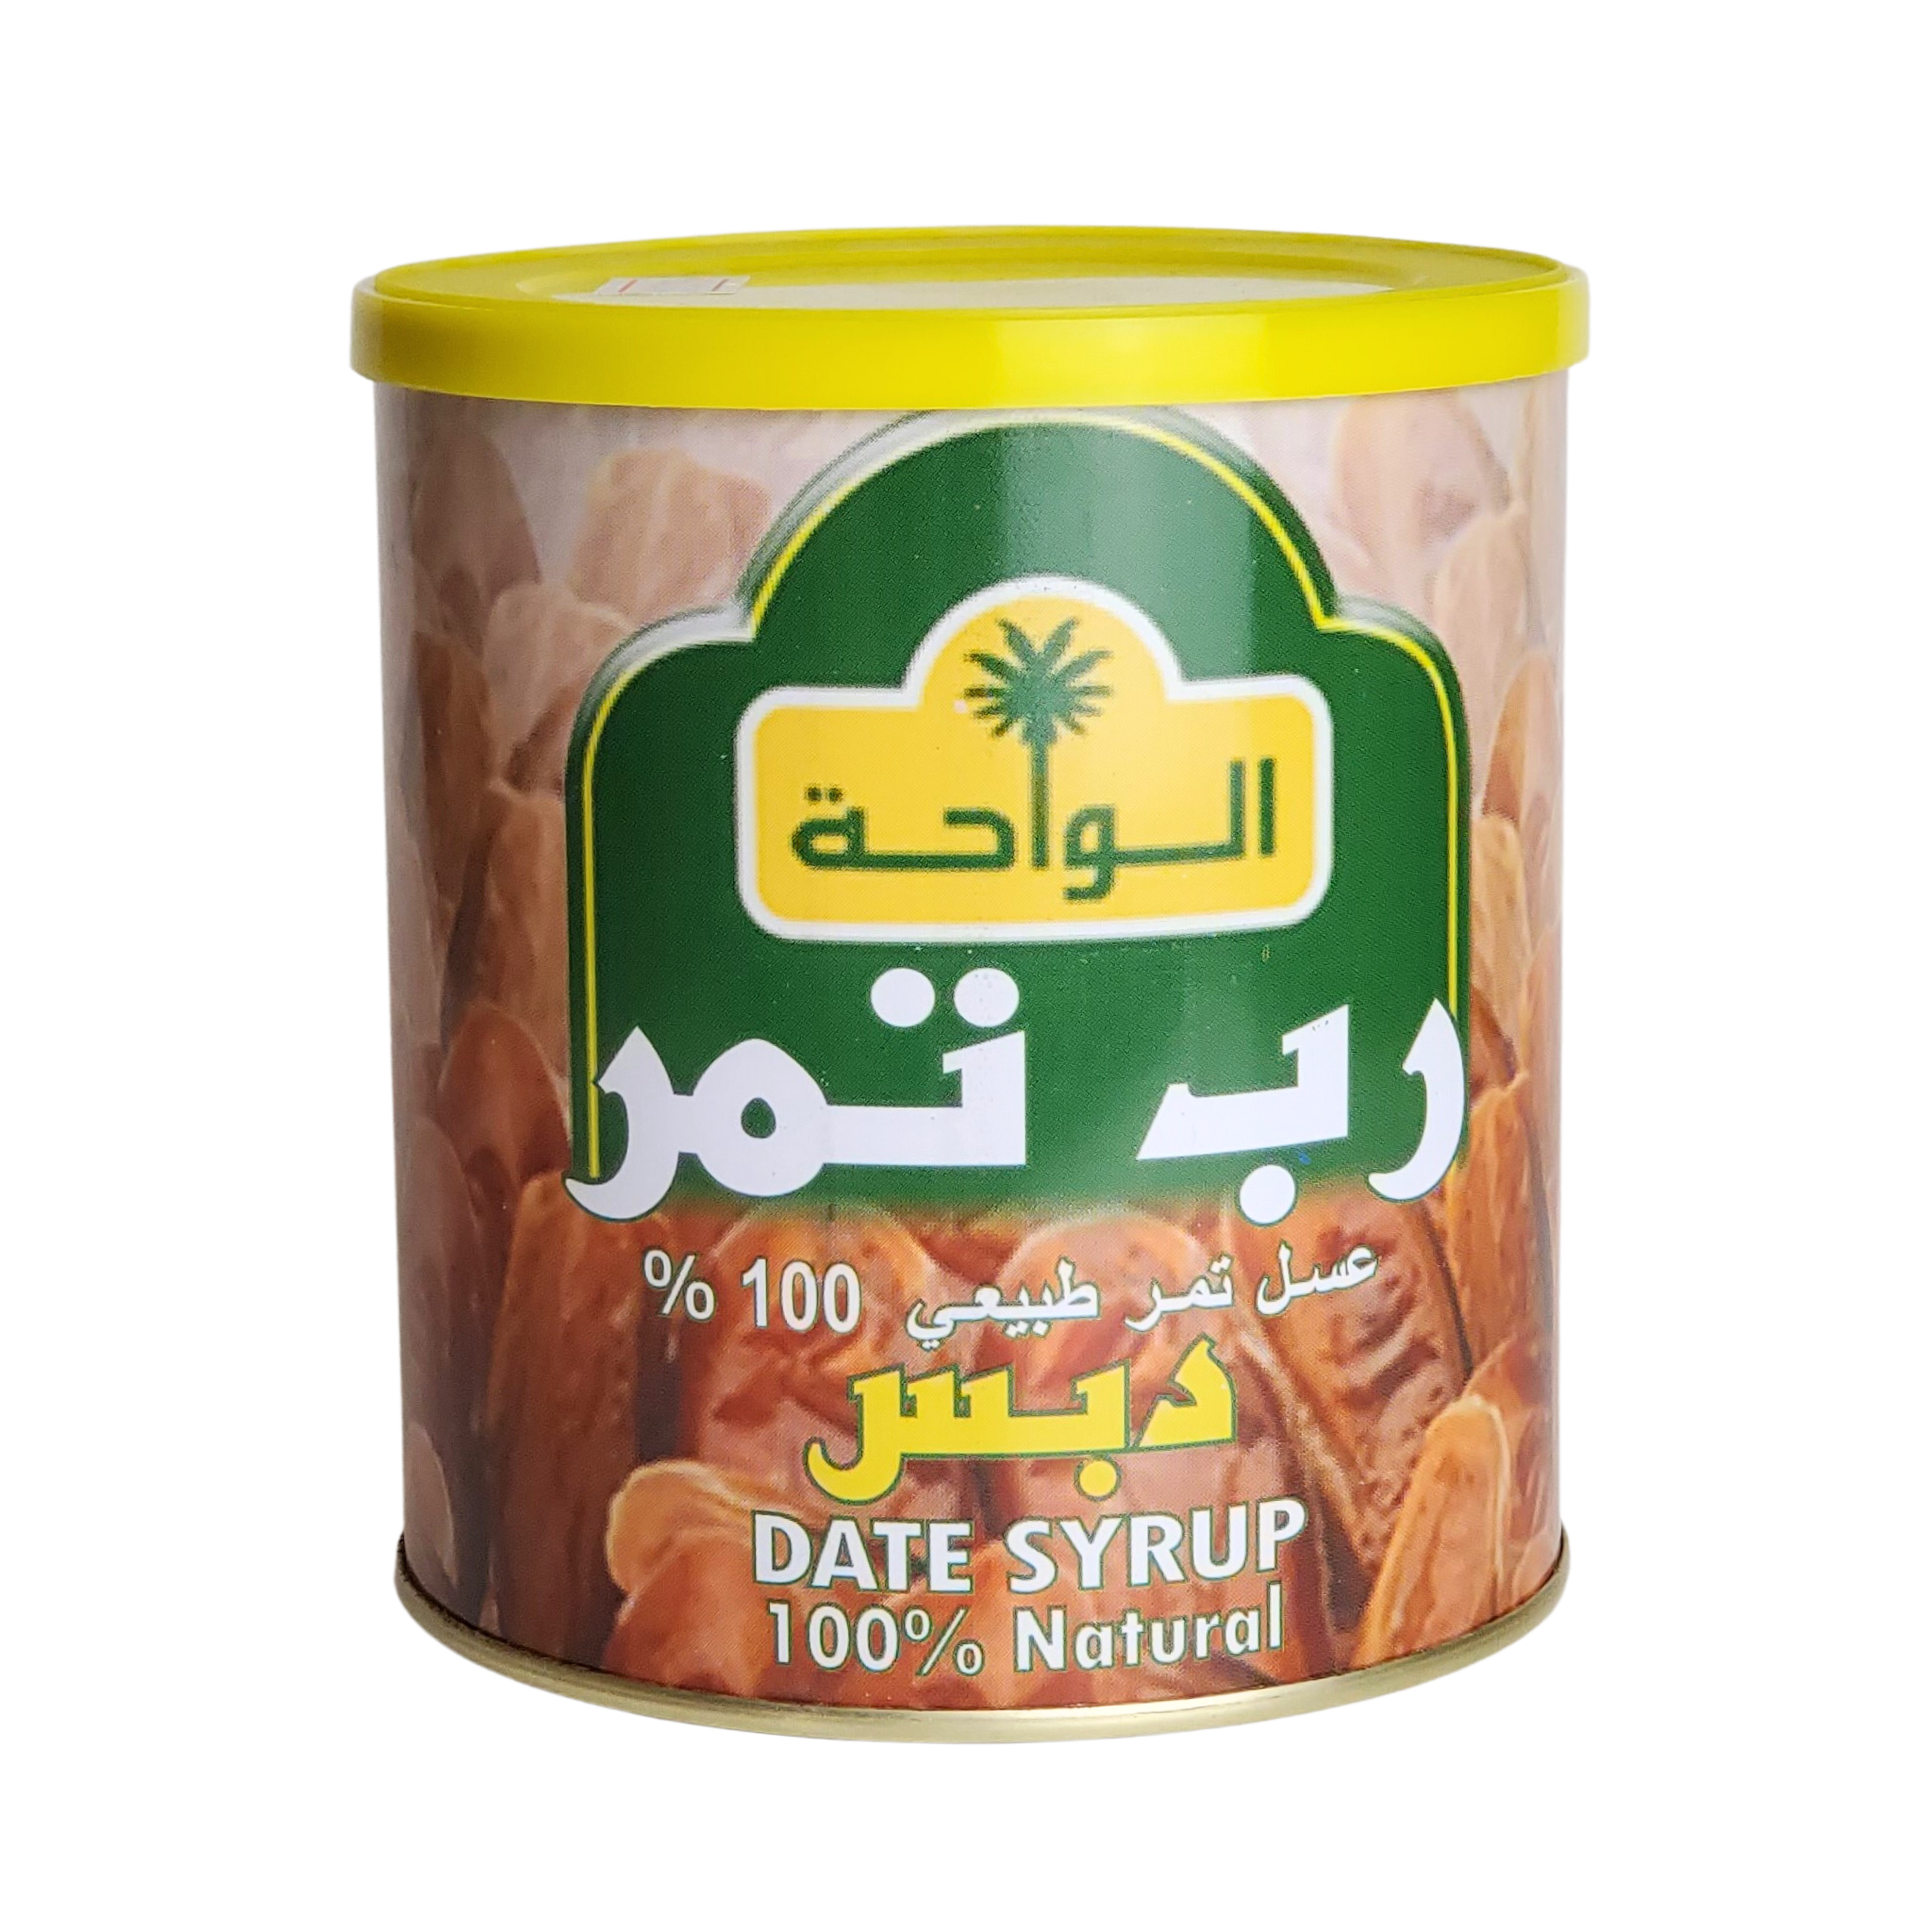 Al-Waha Date Syrup 100% Natural